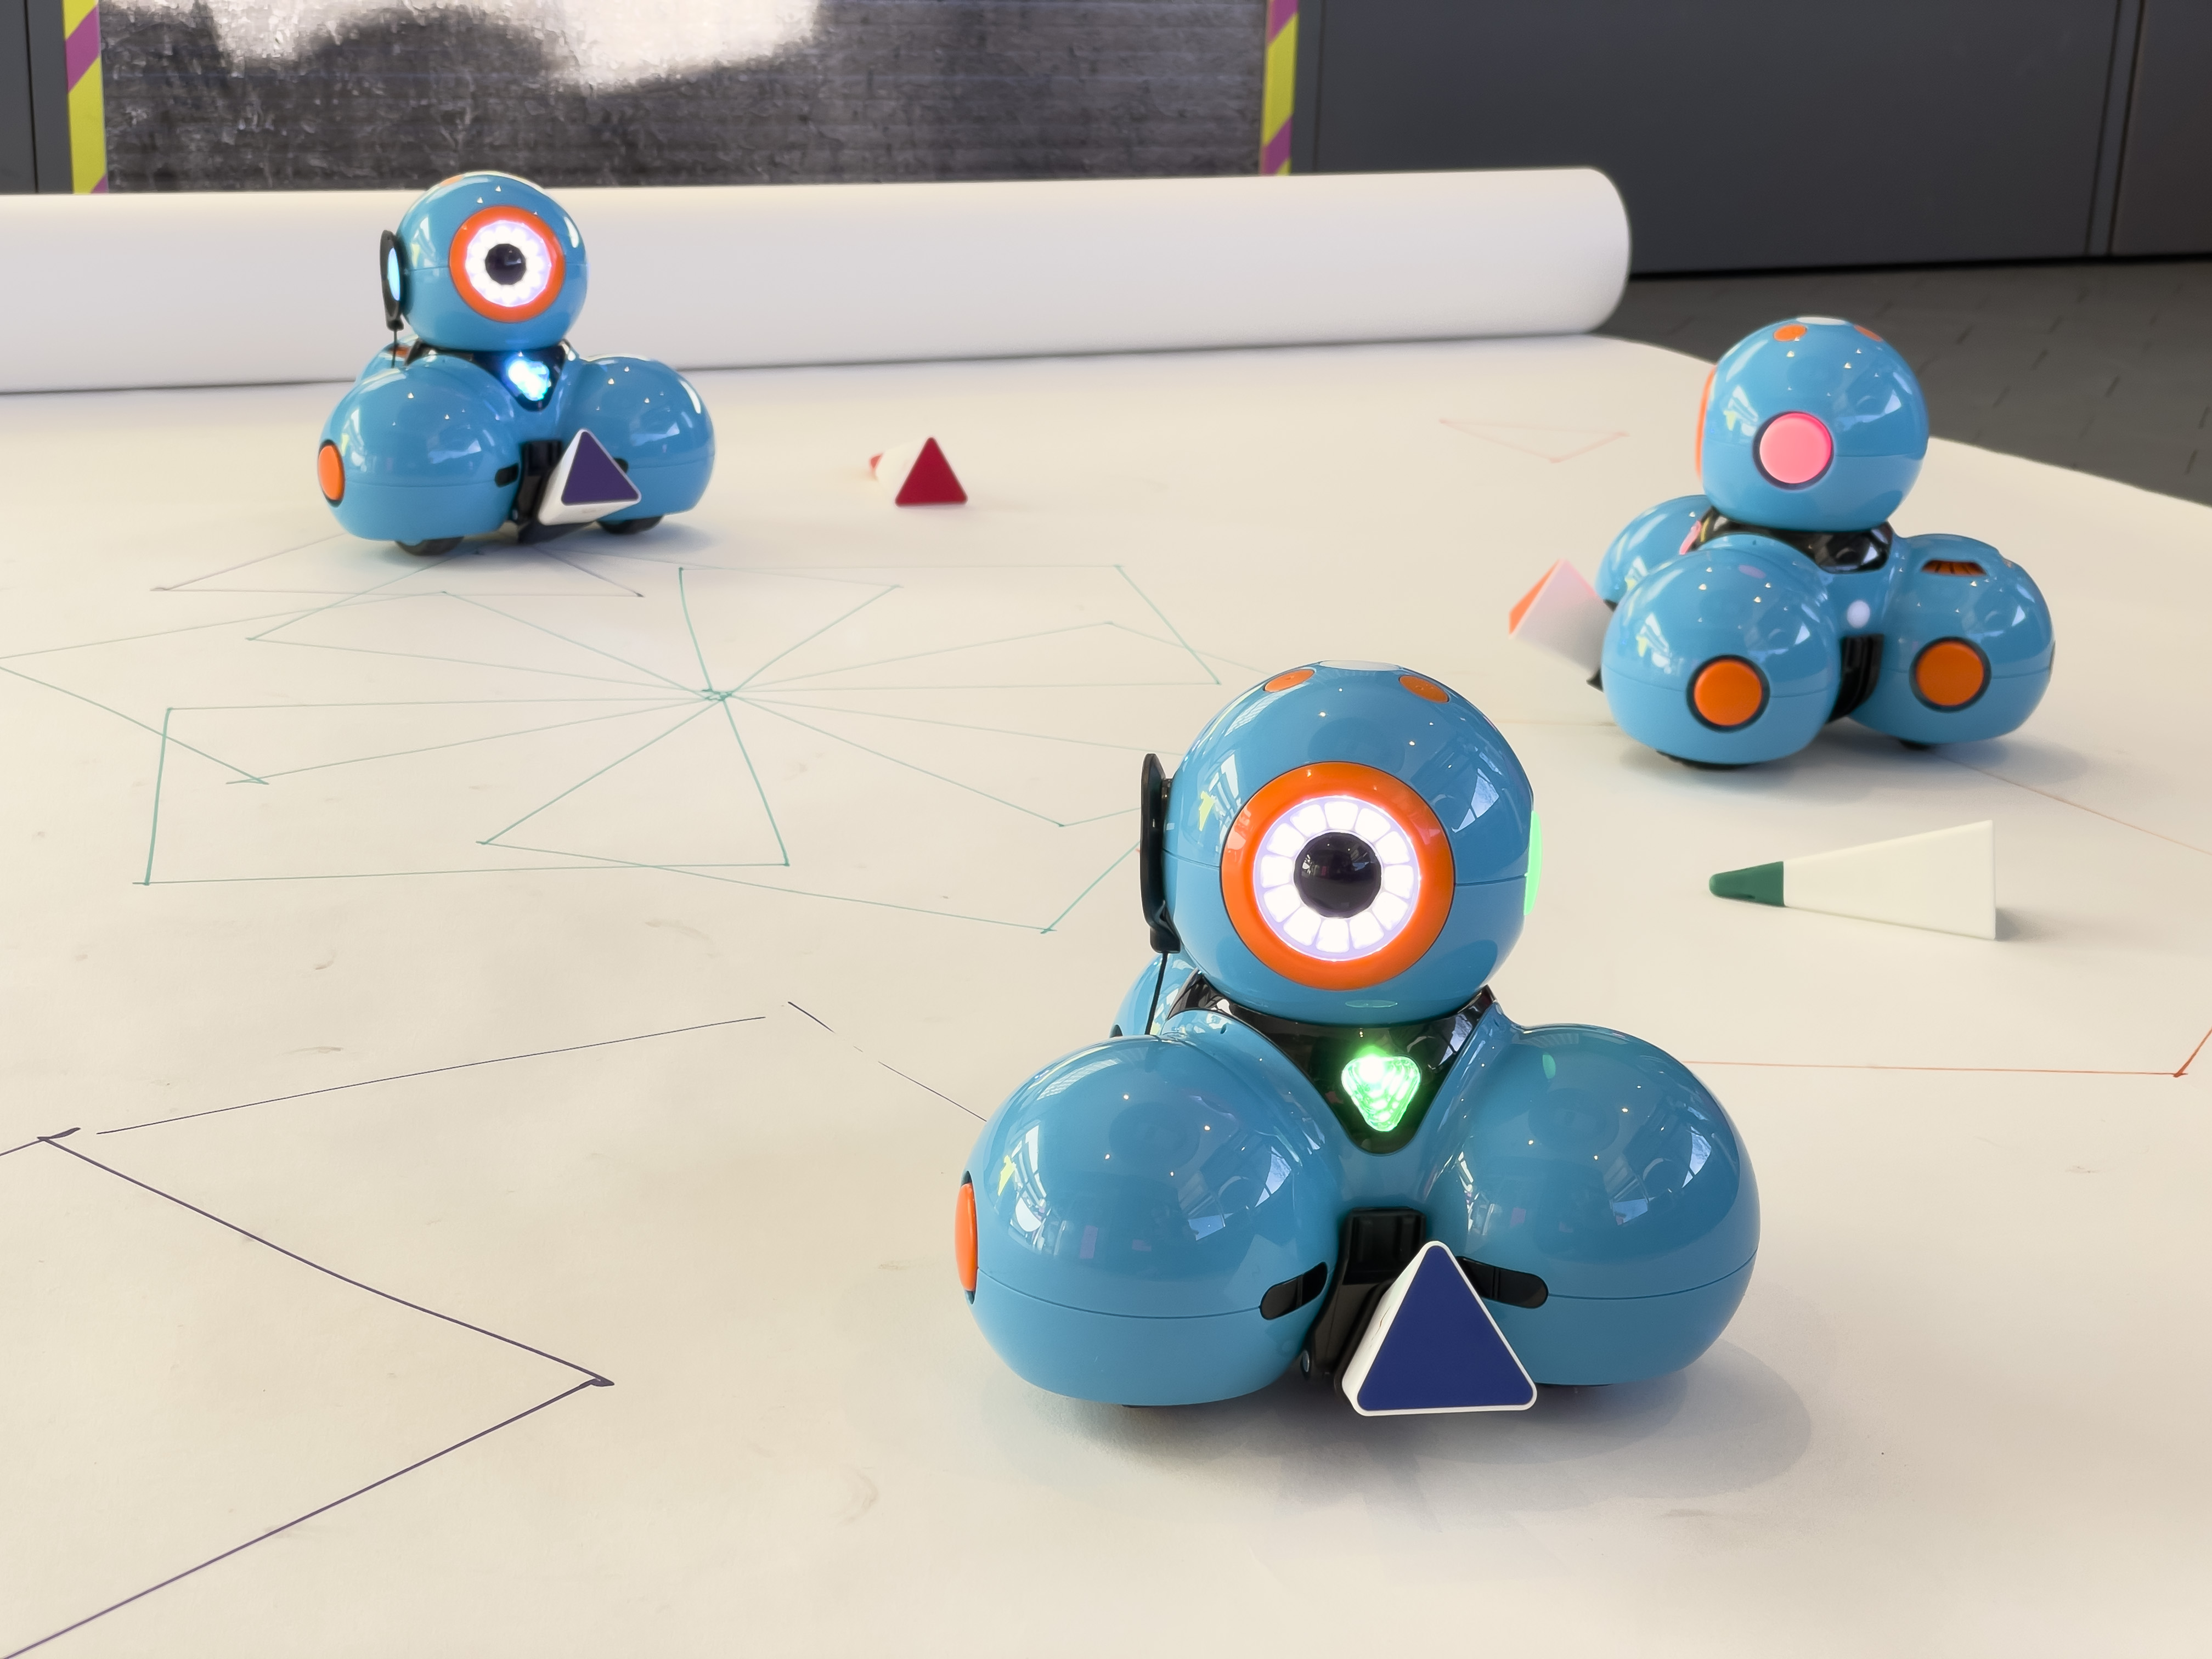 Drei blaue Roboter stehen auf weißem Untergrund. Auf dem Untergrund sind geometrische Formen gezeichnet.